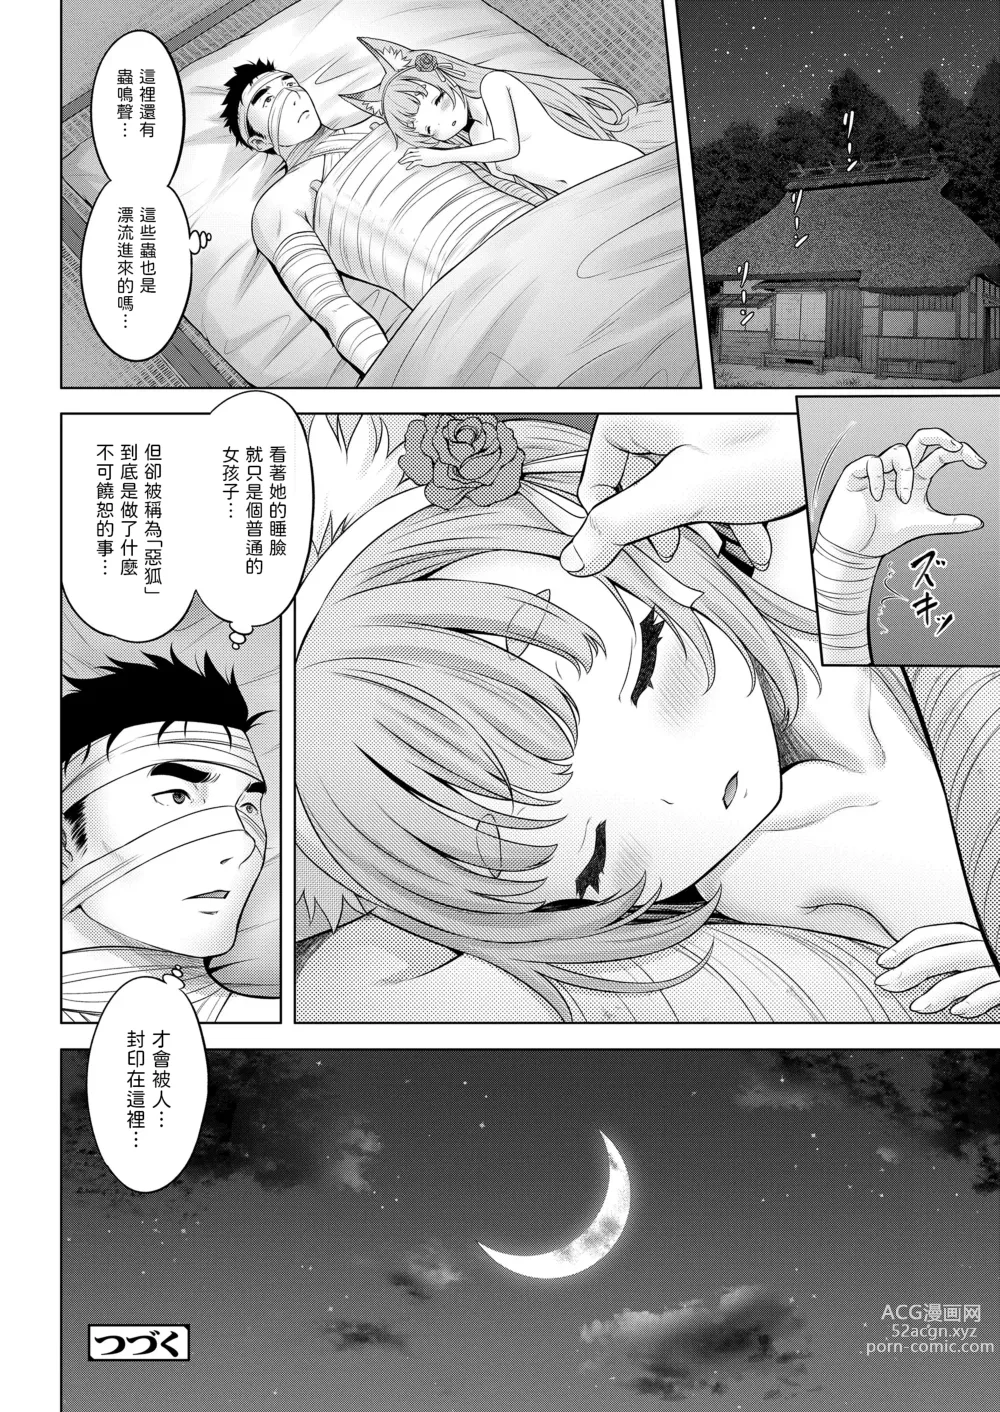 Page 26 of manga Kakuriyo no  Ako